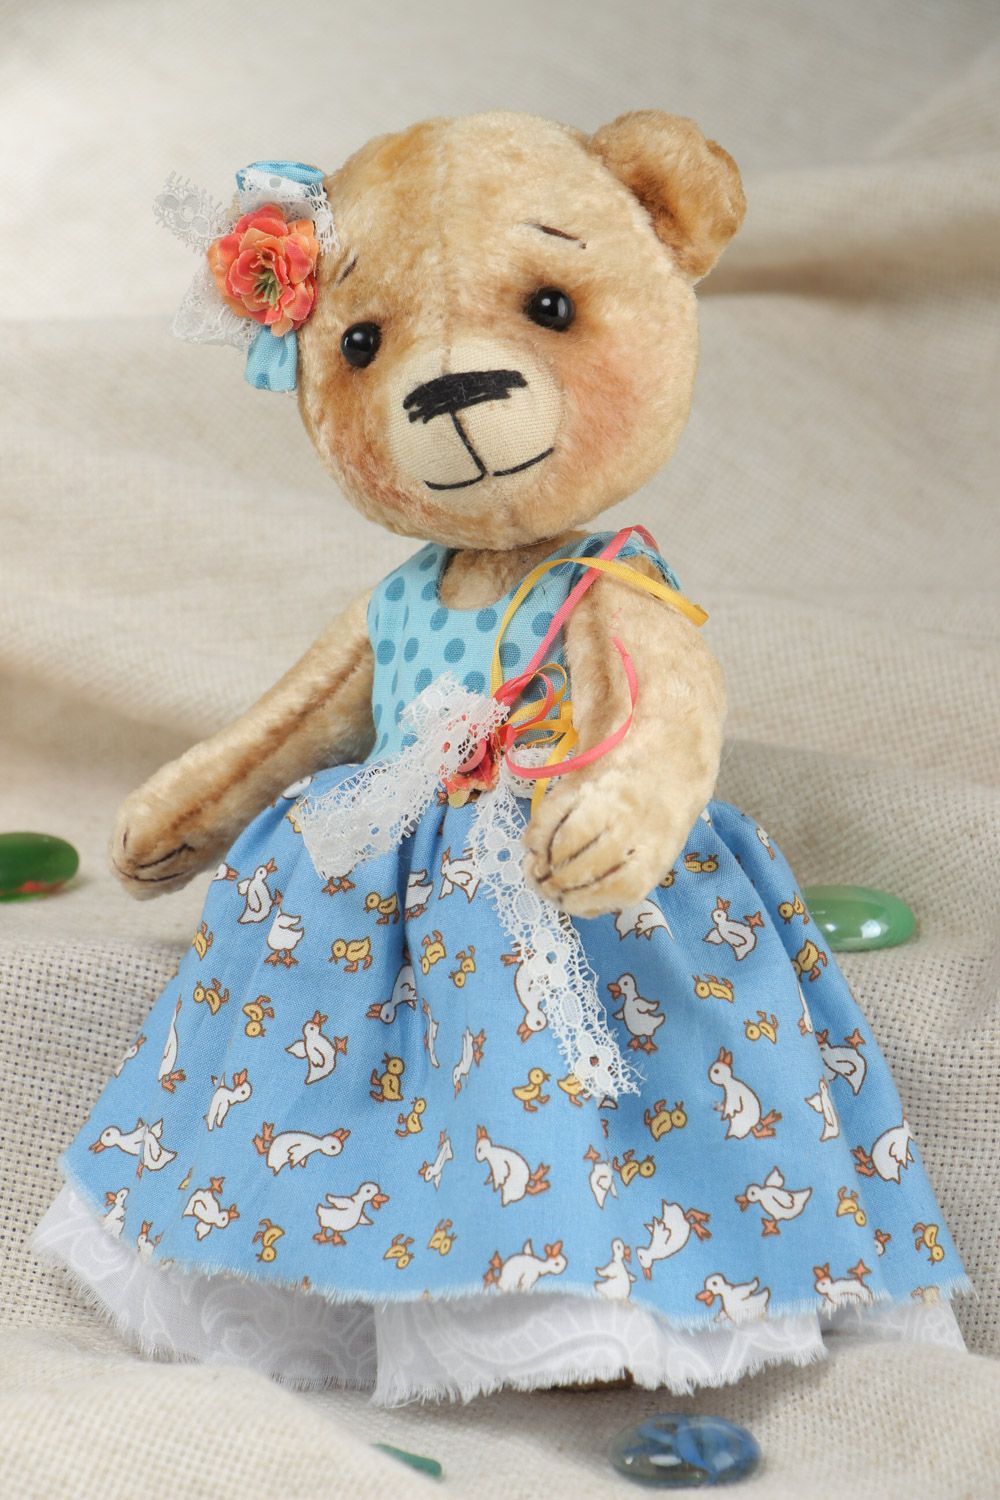 Joli jouet mou fait main ourson en robe peluche sympa cadeau pour enfant photo 1